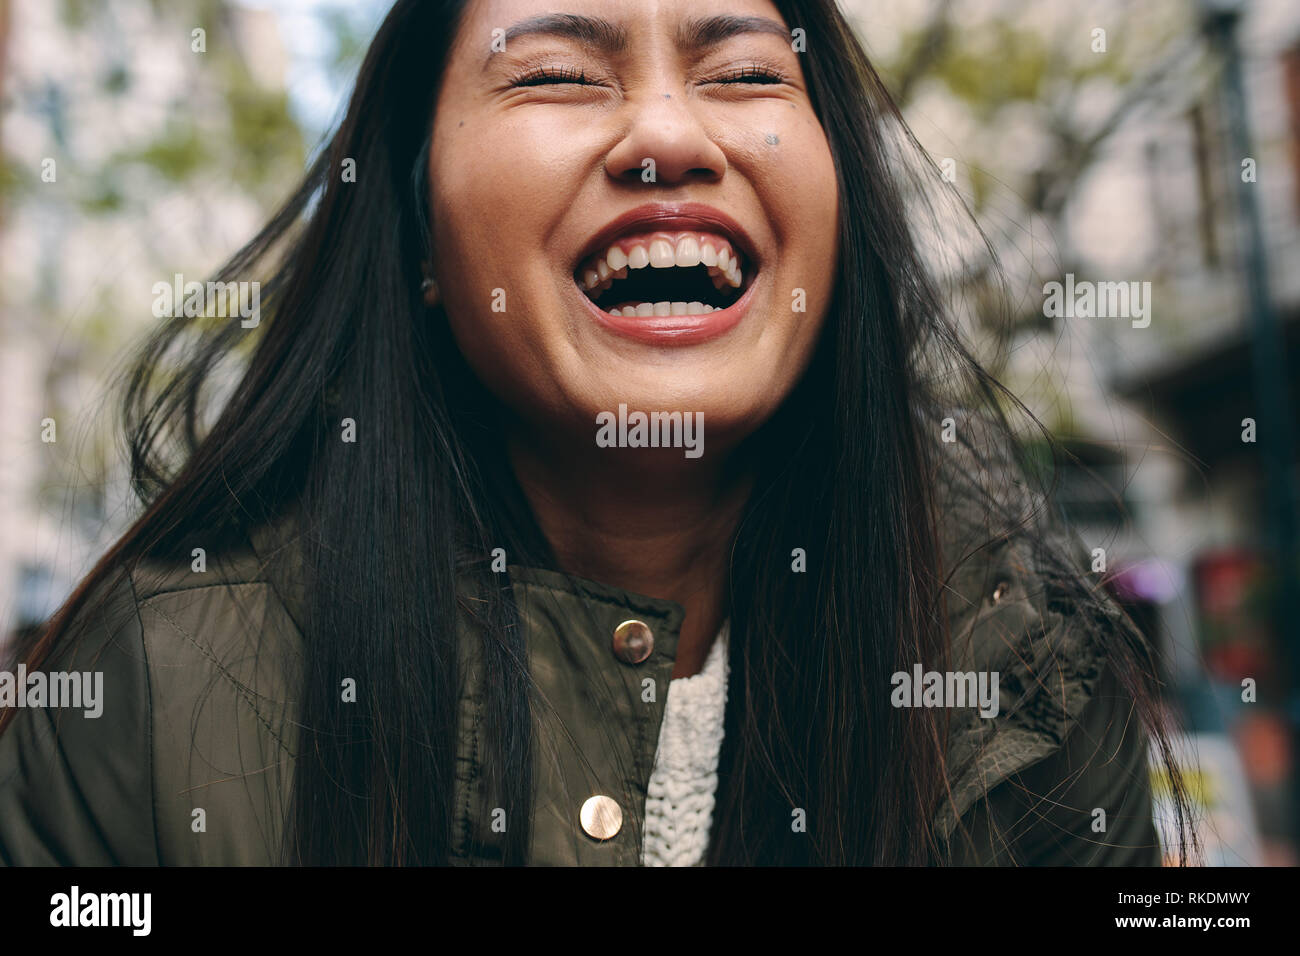 Portrait d'une femme en riant avec les yeux fermés. Cropped shot d'une femme asiatique rire standing outdoors. Banque D'Images